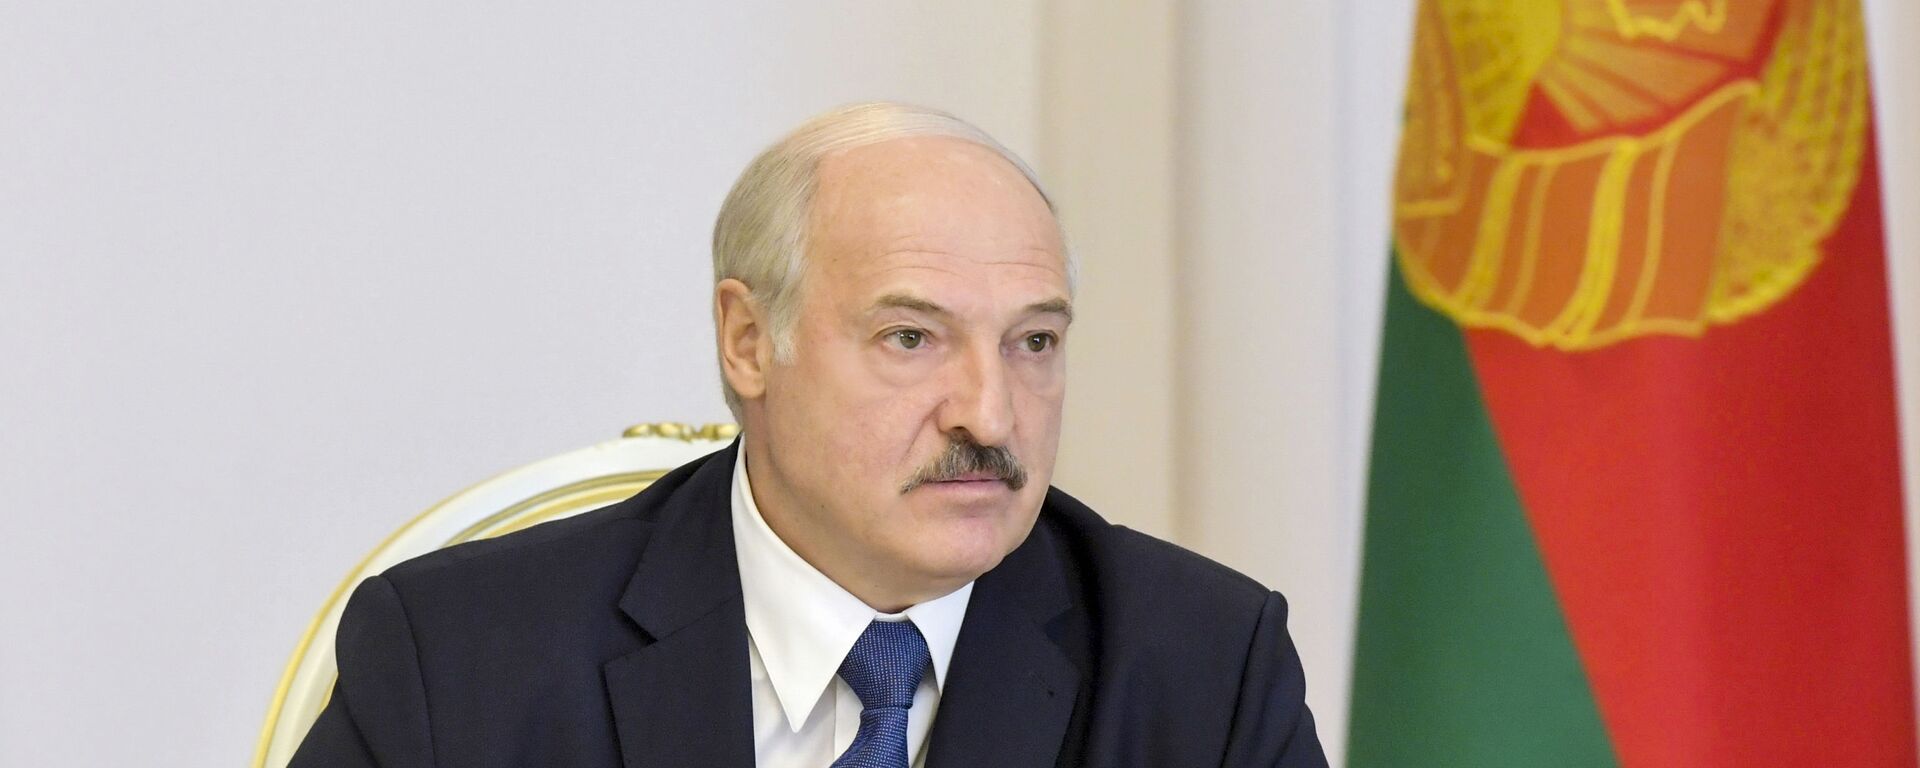 Tổng thống Belarus Alexander Lukashenko phát biểu tại Hội đồng Bảo an ở Minsk - Sputnik Việt Nam, 1920, 10.10.2022